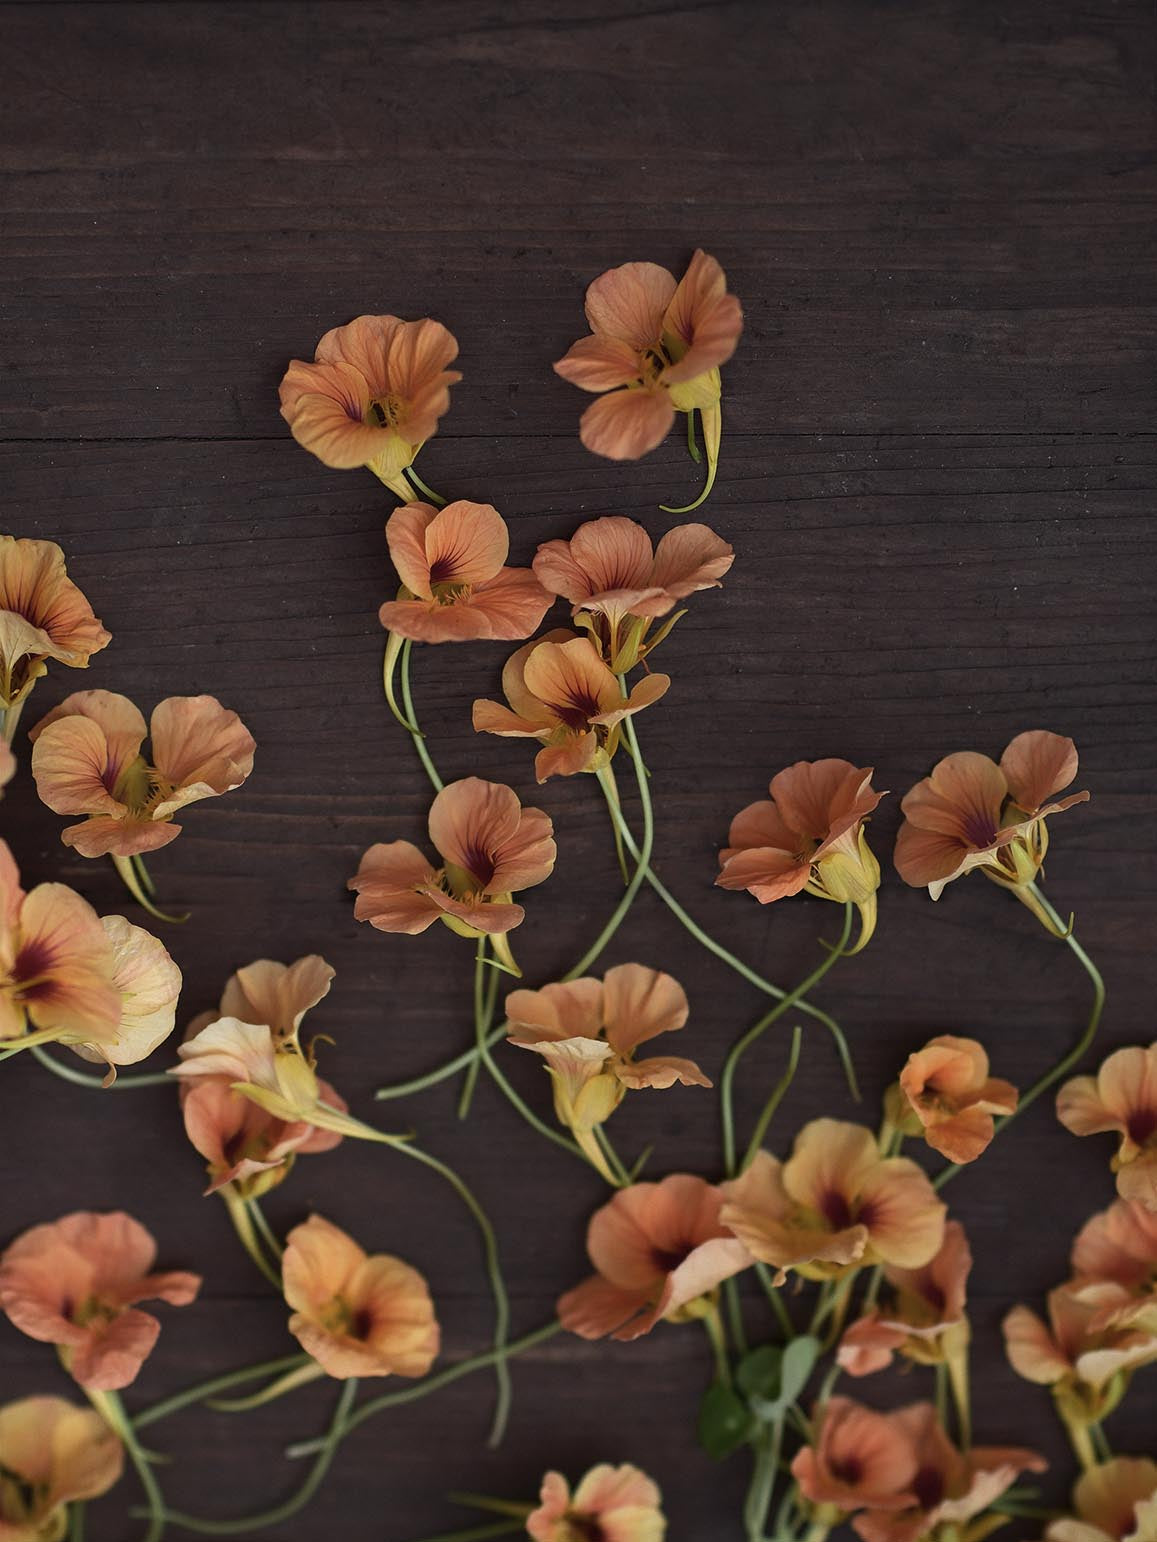 Dvärgkrasse 'Apricot' på en bänk, närbild på blomman